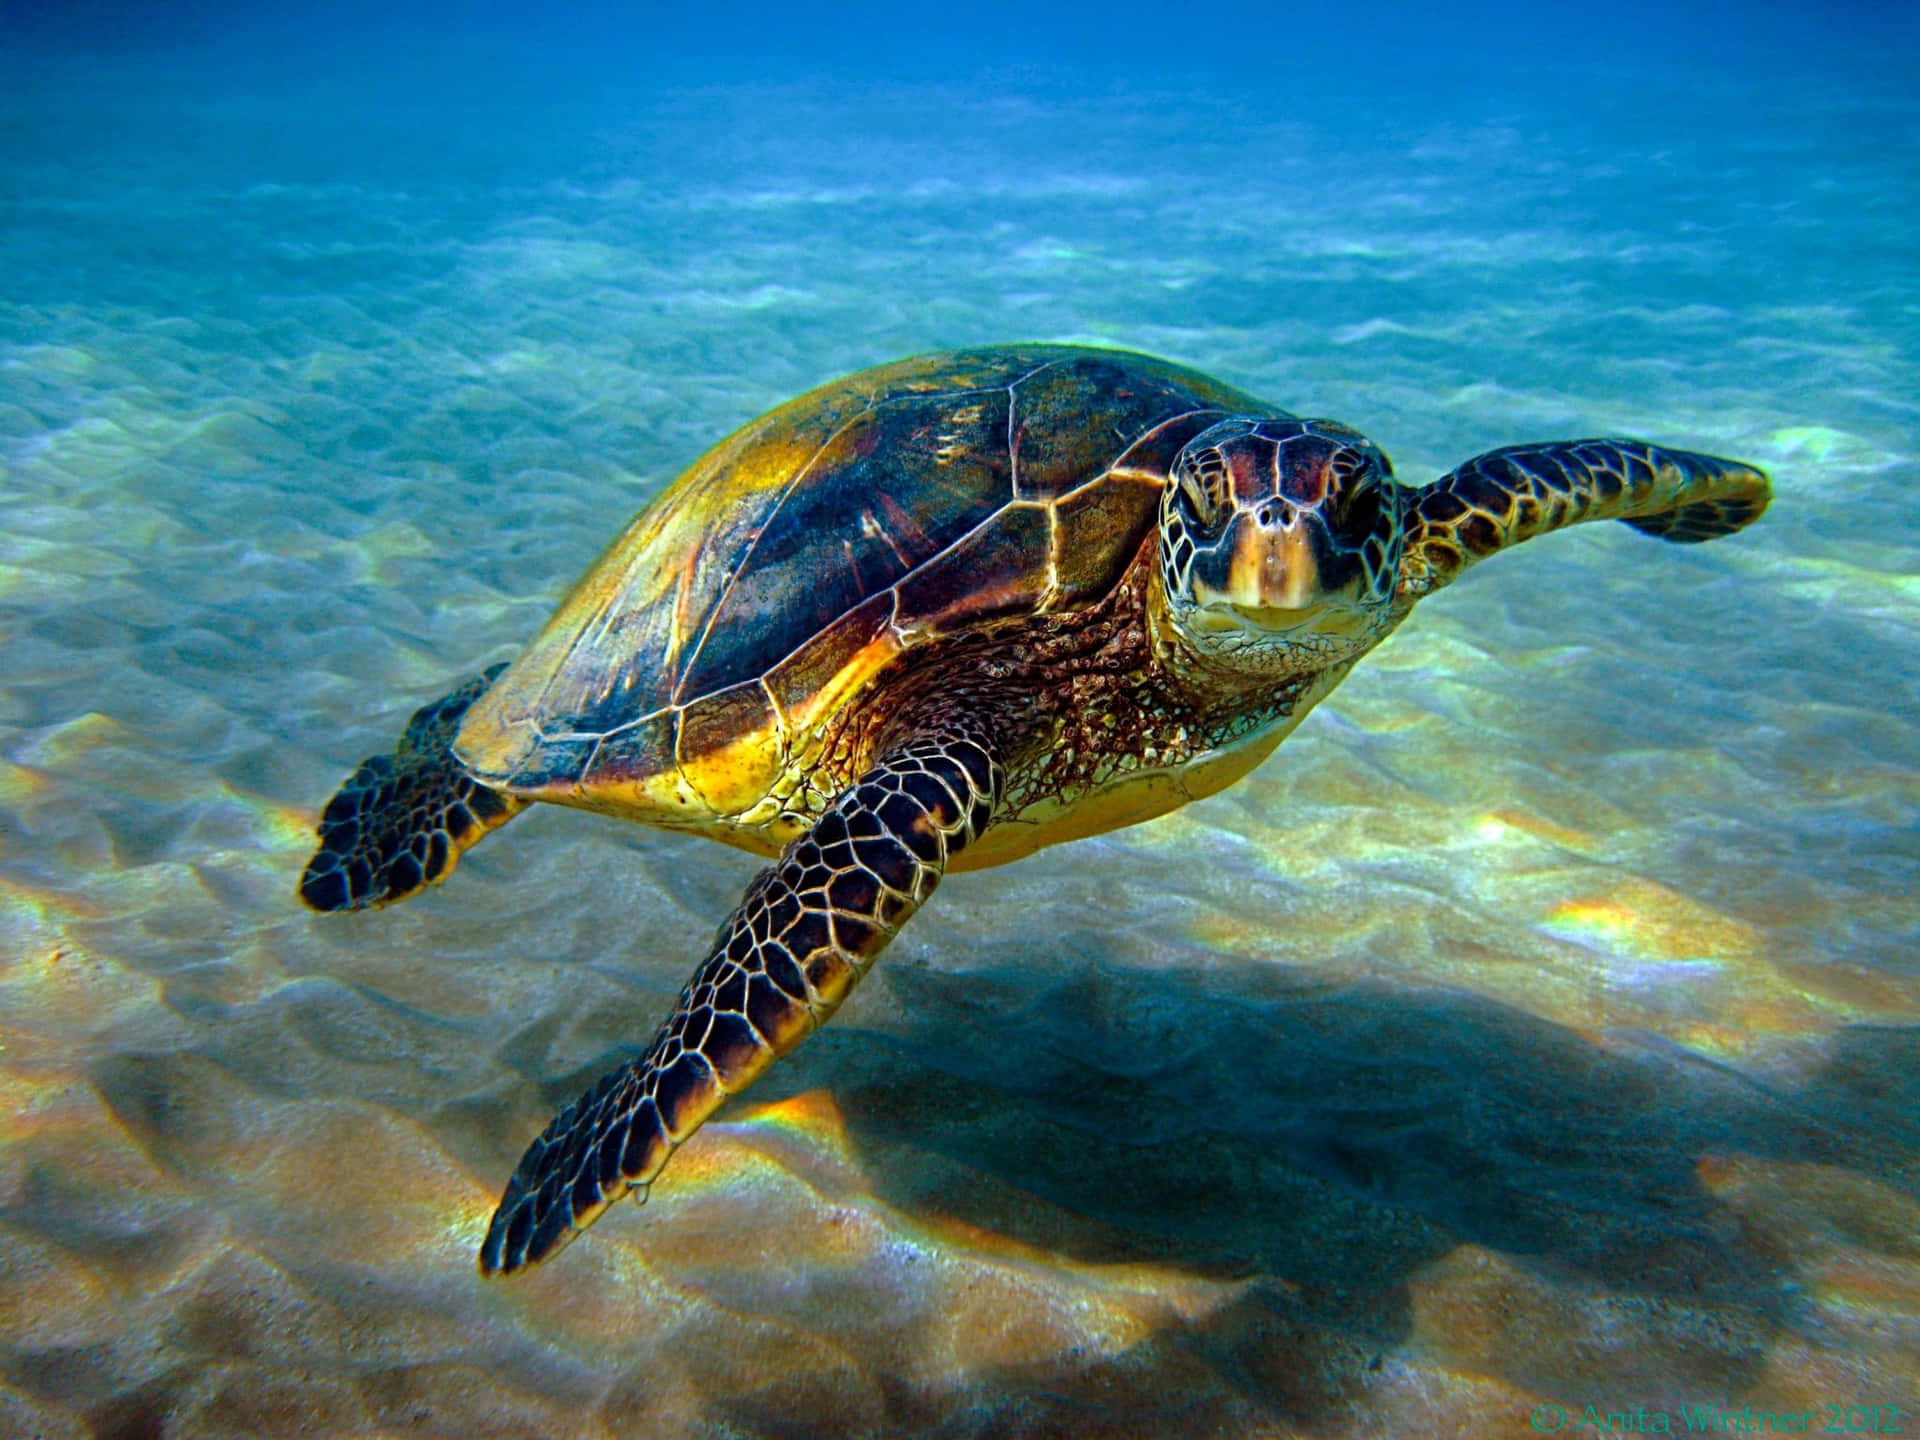 Einefriedlich Schwimmende Meeresschildkröte In Den Ruhigen Und Klaren Gewässern Der Karibik.